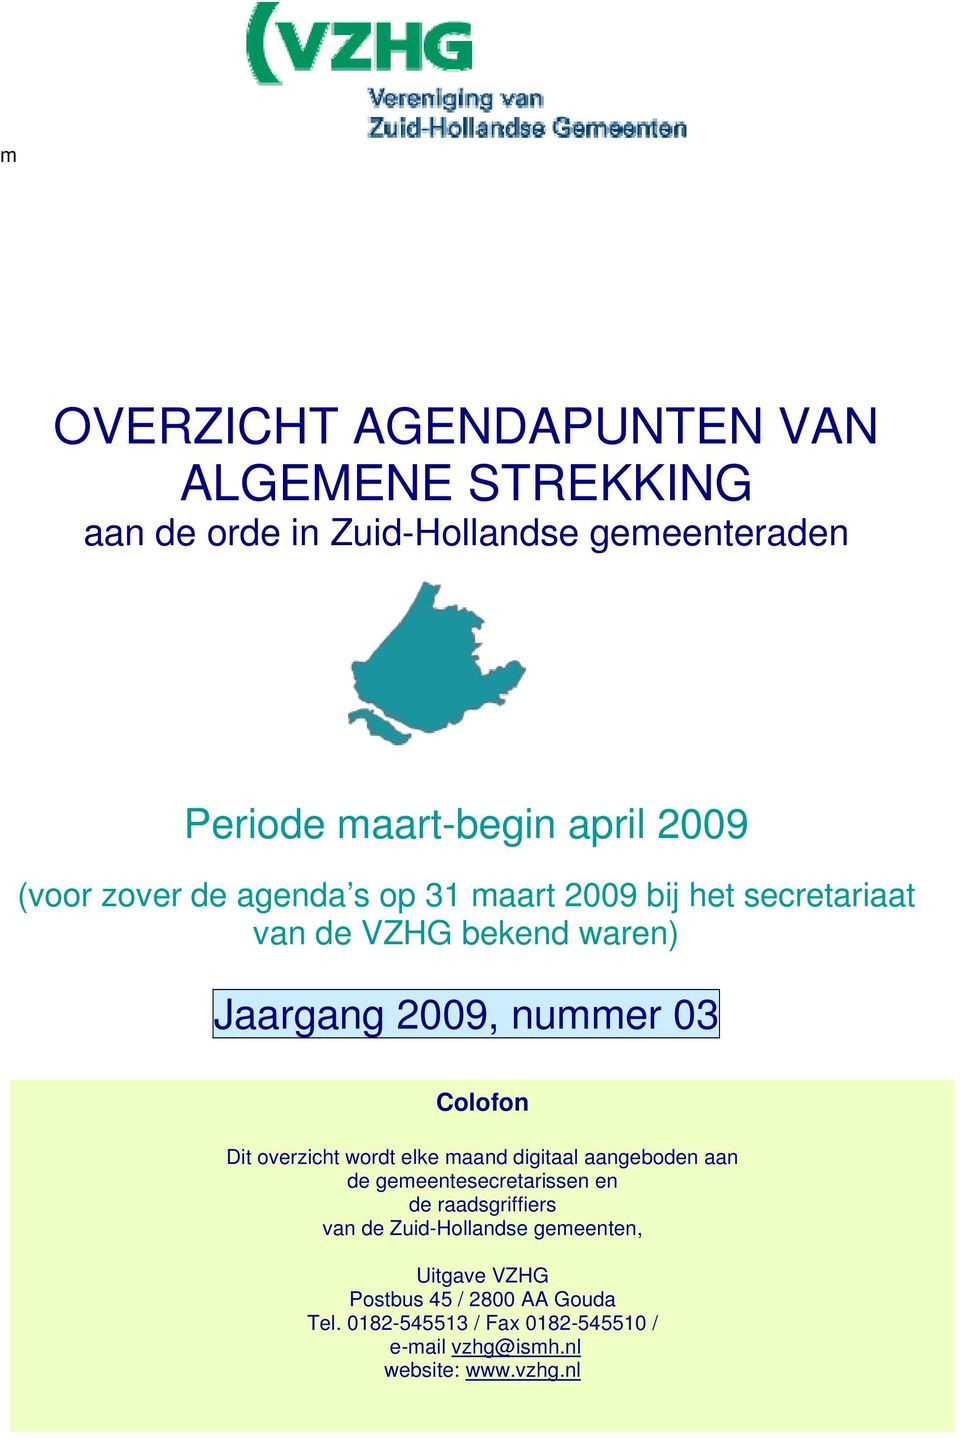 Dit overzicht wordt elke maand digitaal aangeboden aan de gemeentesecretarissen en de raadsgriffiers van de Zuid-Hollandse